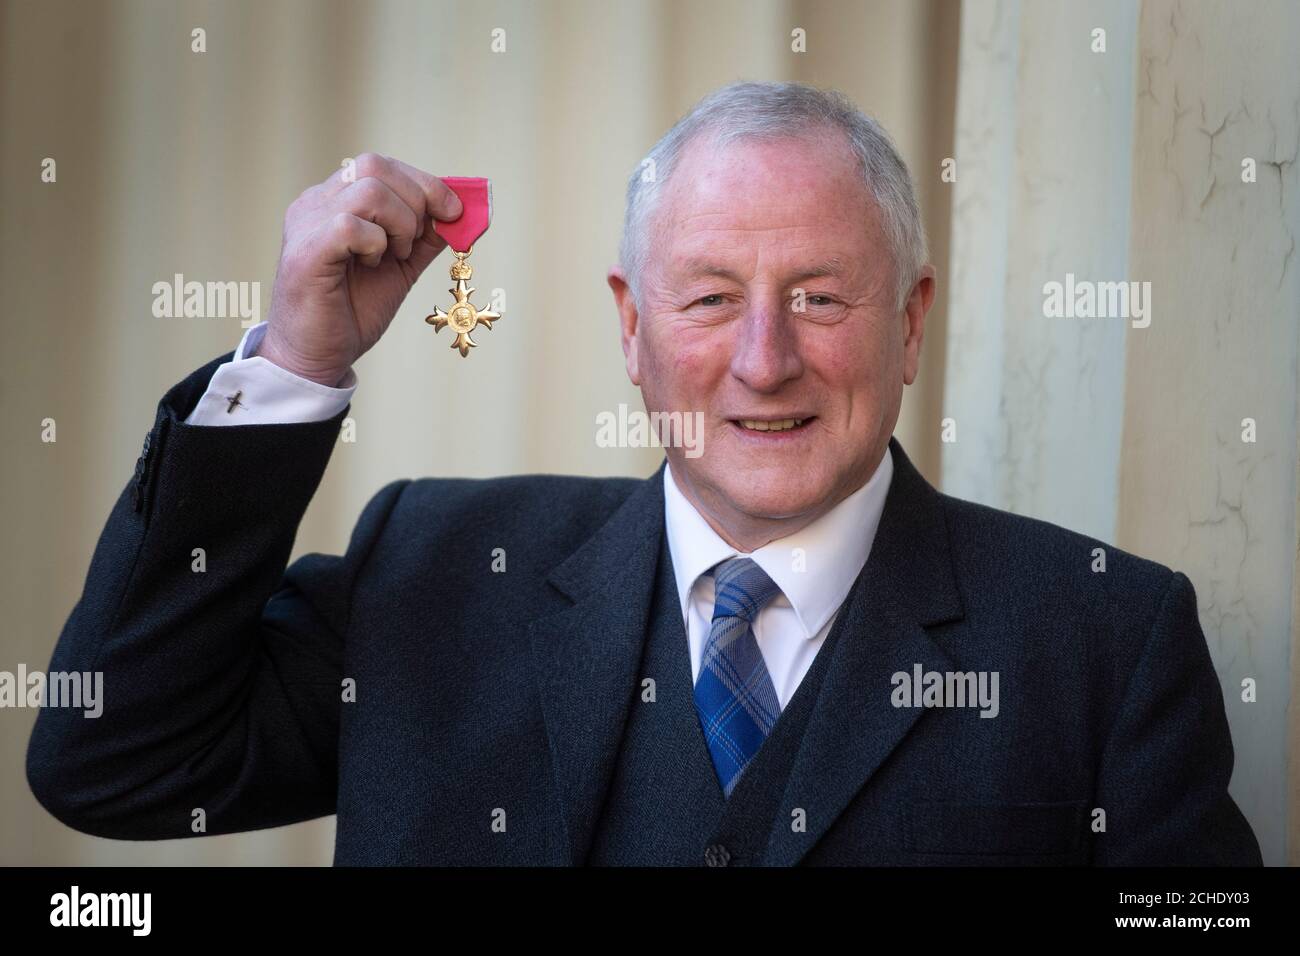 Robert Edwards mit seiner OBE (Officer of the Order of the British Empire), die bei einer Investiturfeier im Buckingham Palace, London, überreicht wurde. Stockfoto